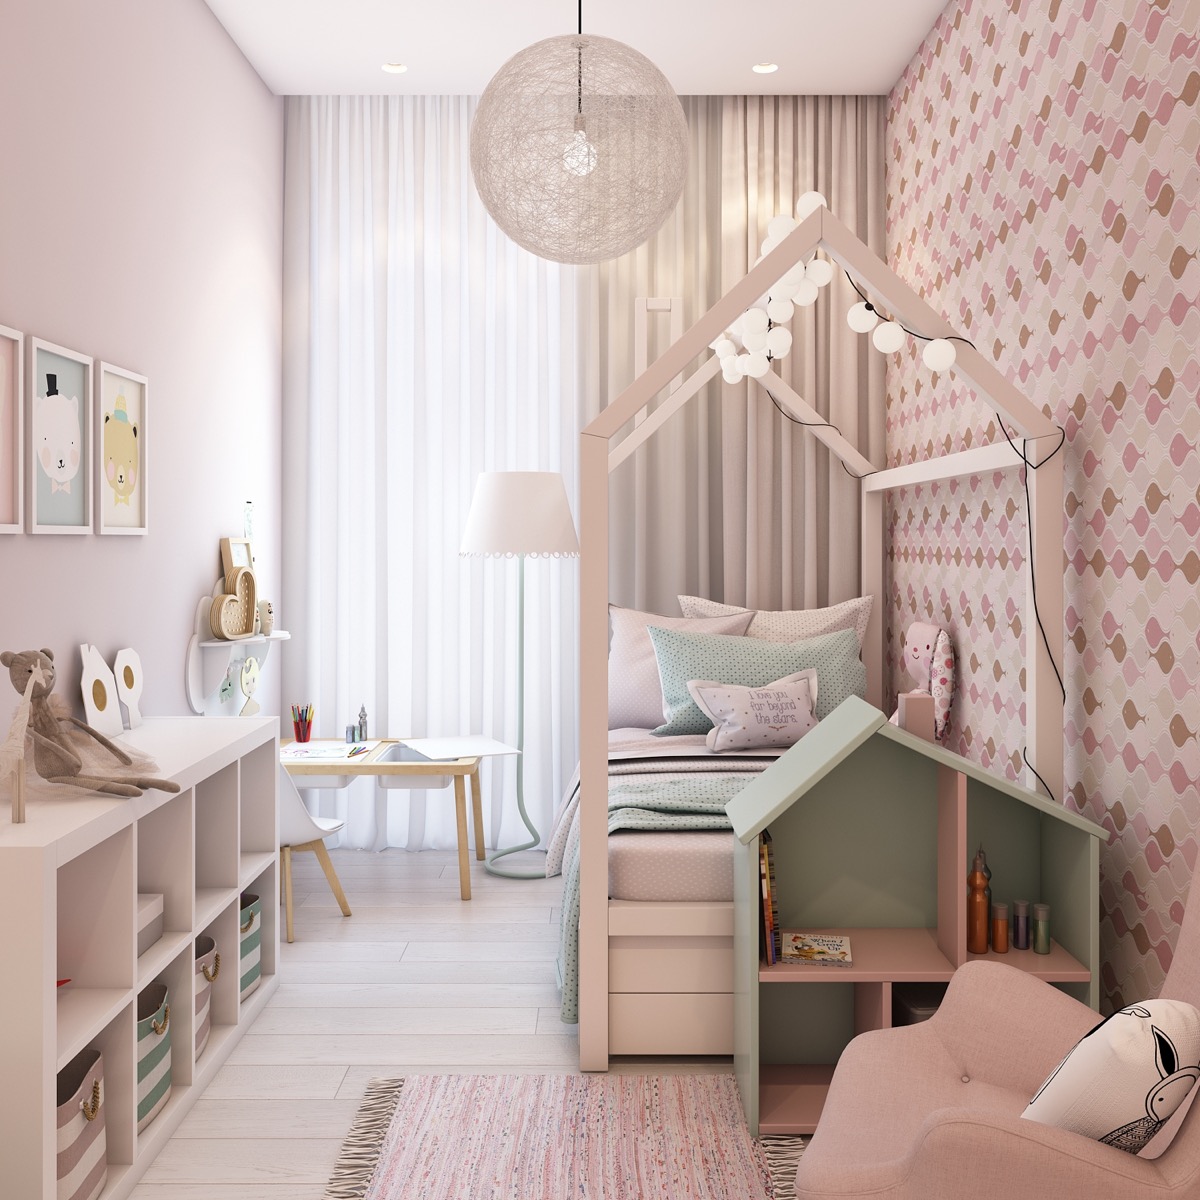 Hình ảnh phòng ngủ bé gái sử dụng màu hồng pastel, giường khung hình ngôi nhà, đèn thả độc đáo